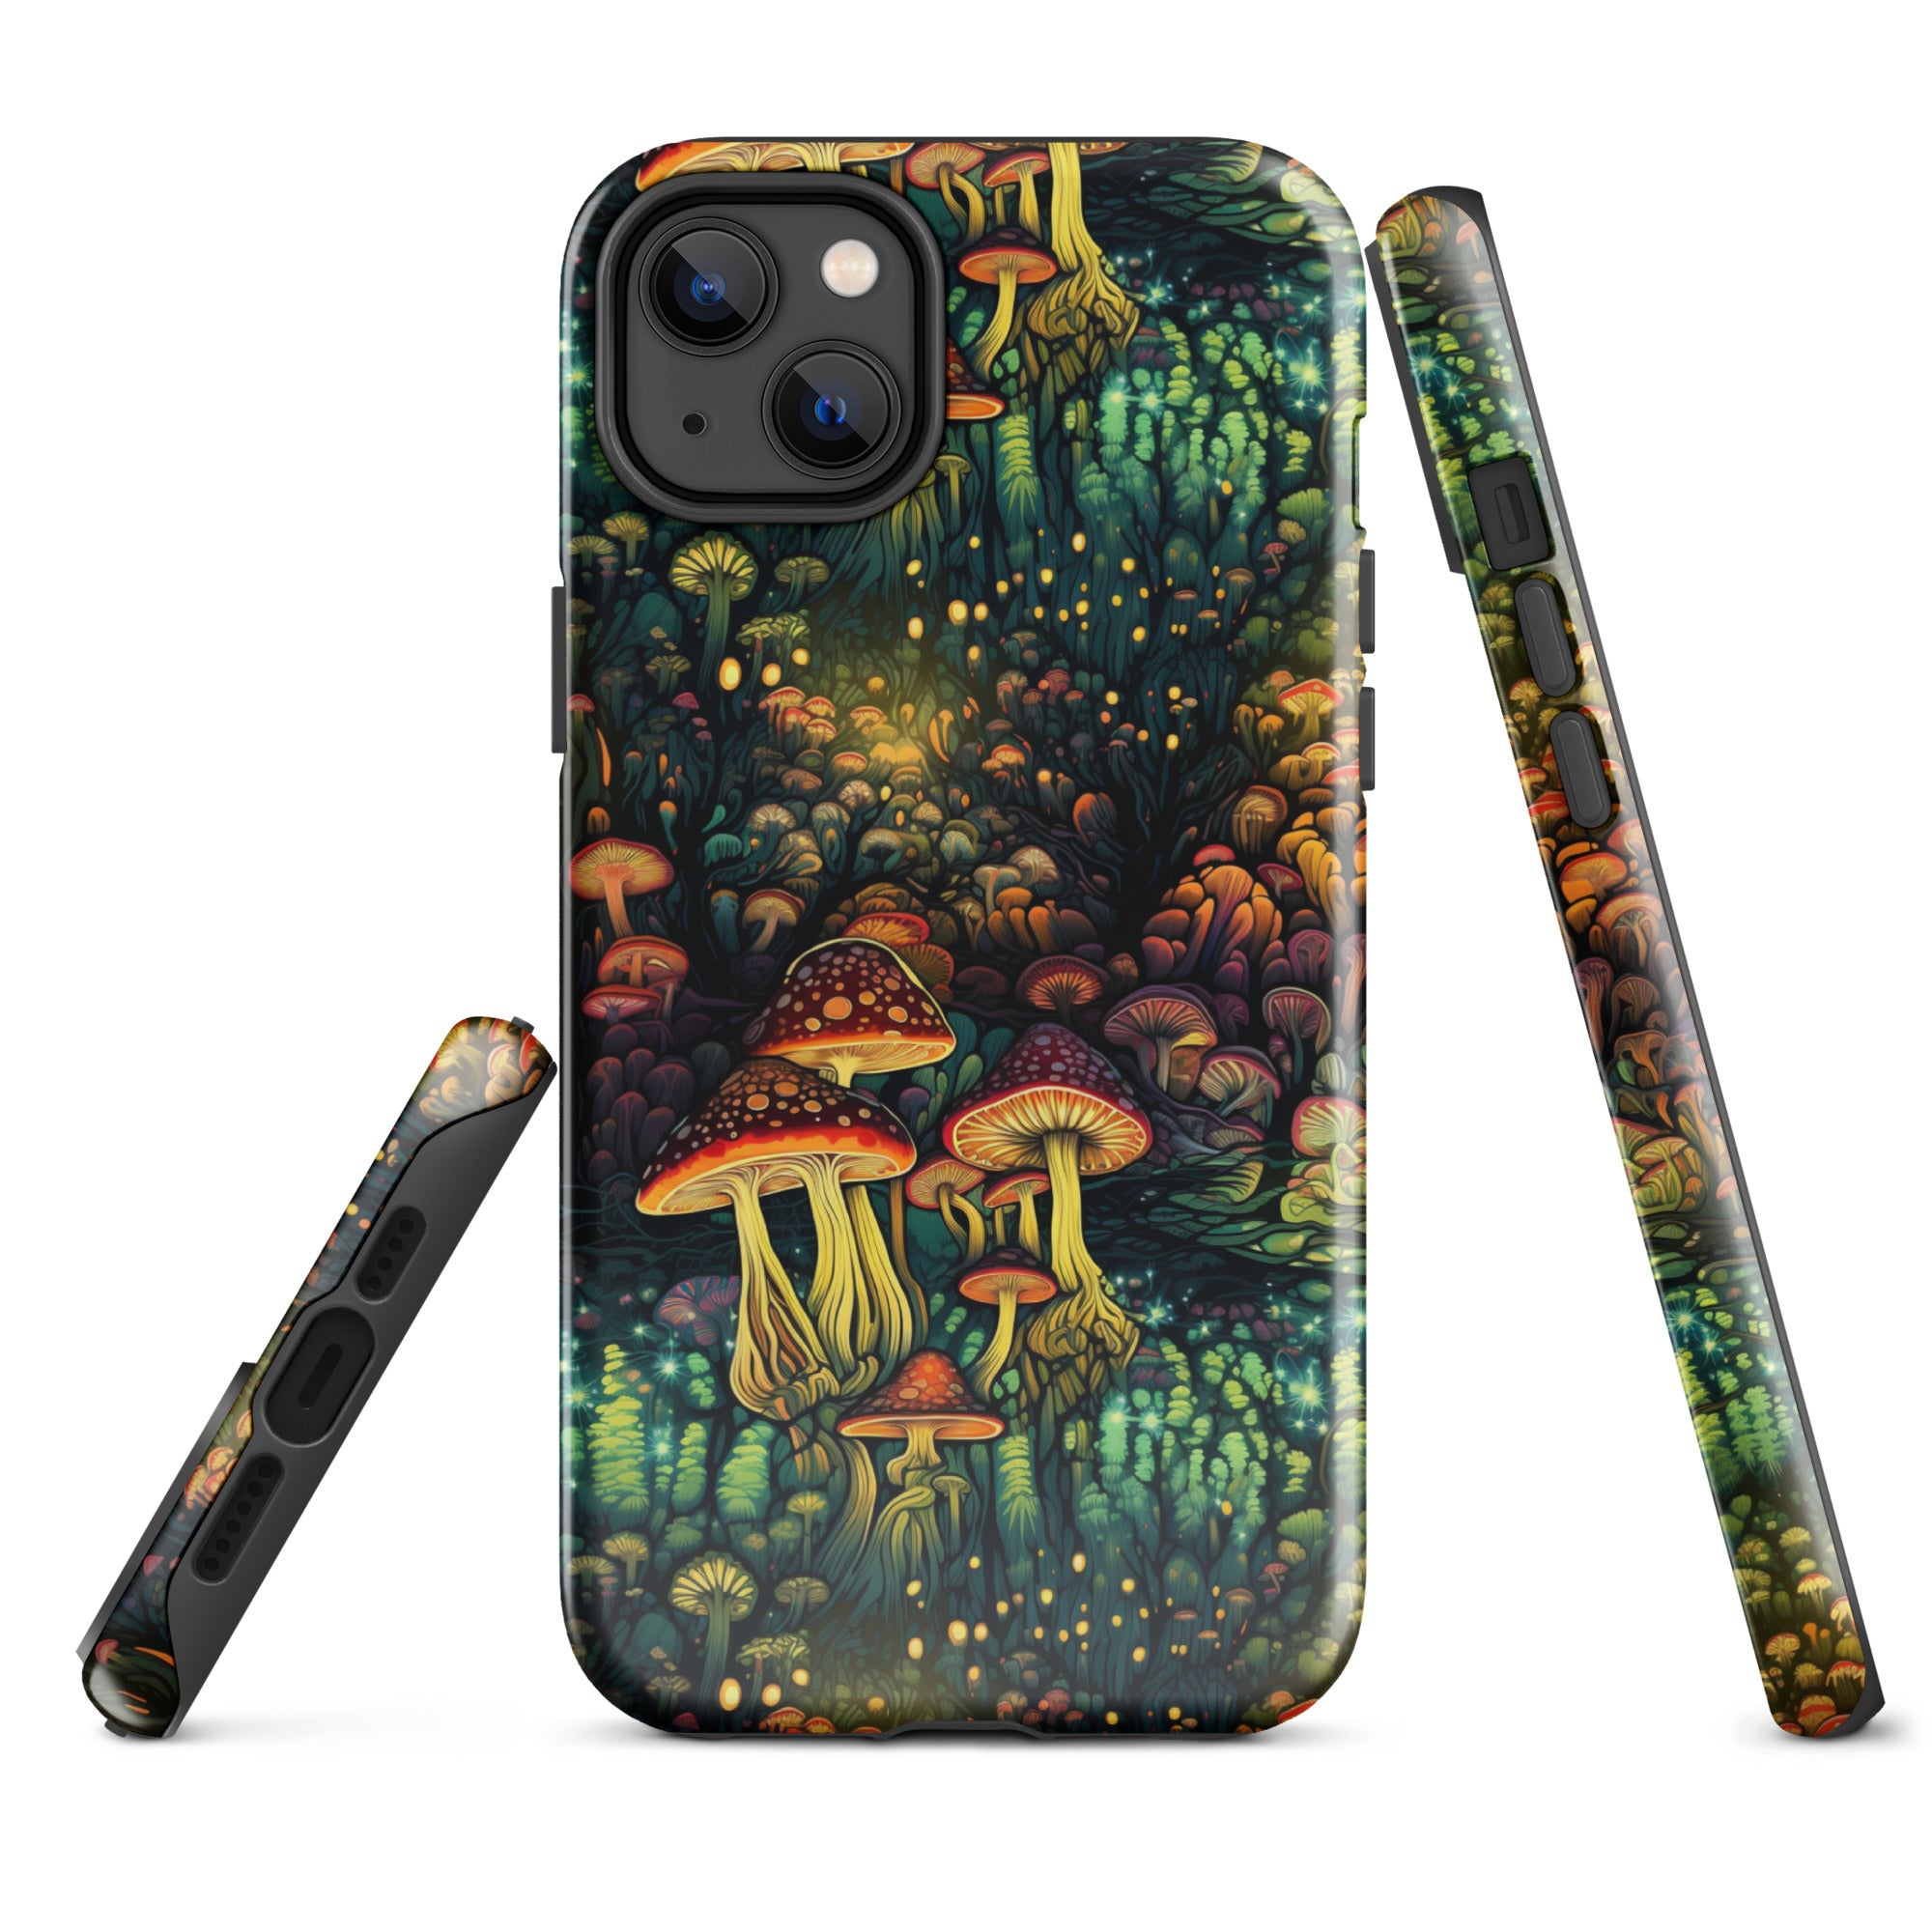 Neon Hallucinations - An Illuminated Autumn Spectacle - iPhone Case